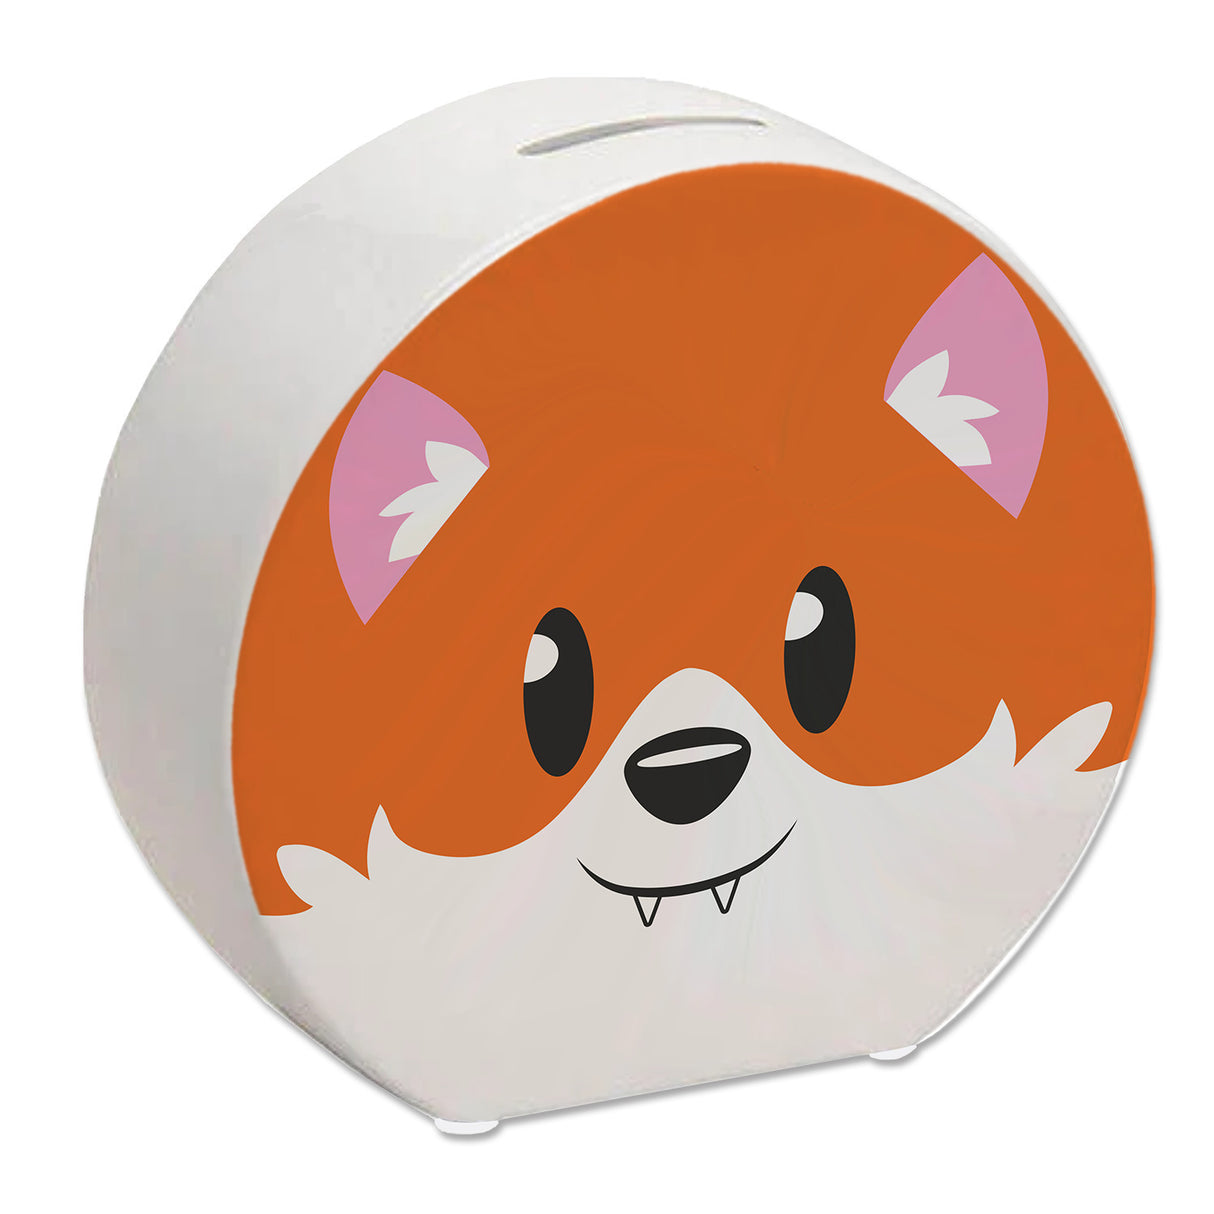 Spardose aus Keramik mit niedlichem Fuchs-Gesicht - für kleine Kinder